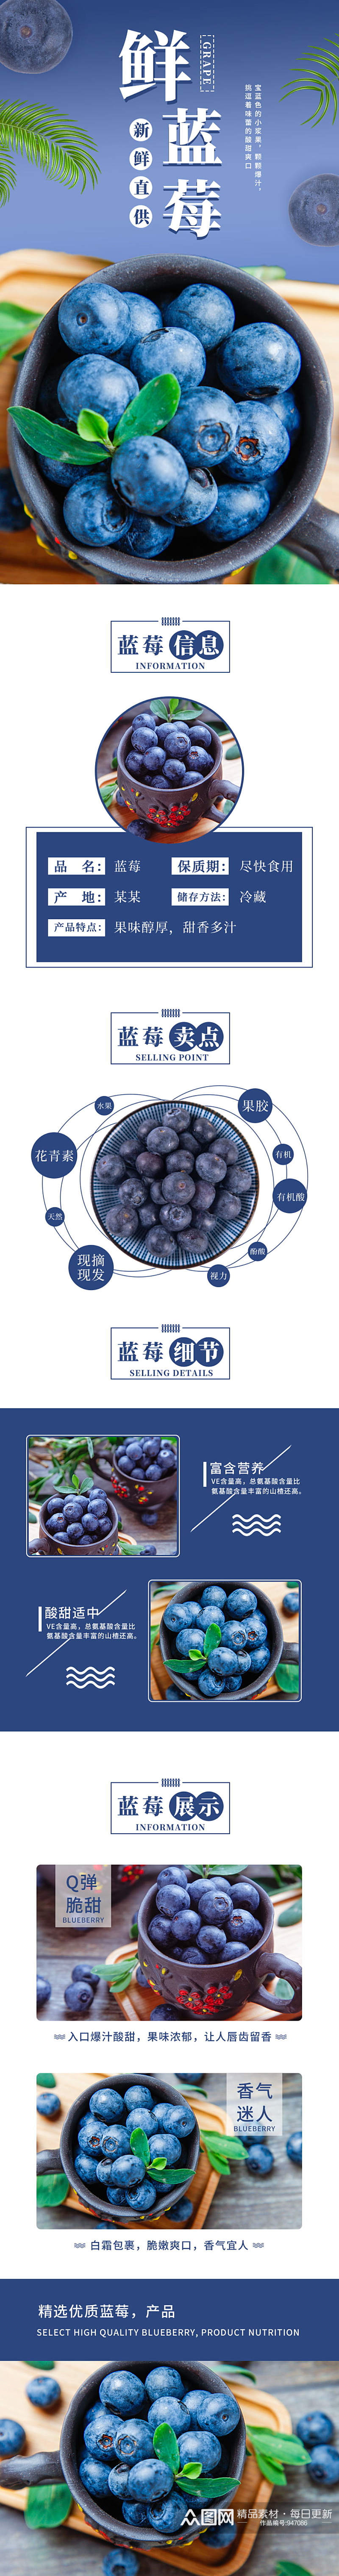 淘宝蓝色水果蓝莓电商淘宝详情页素材